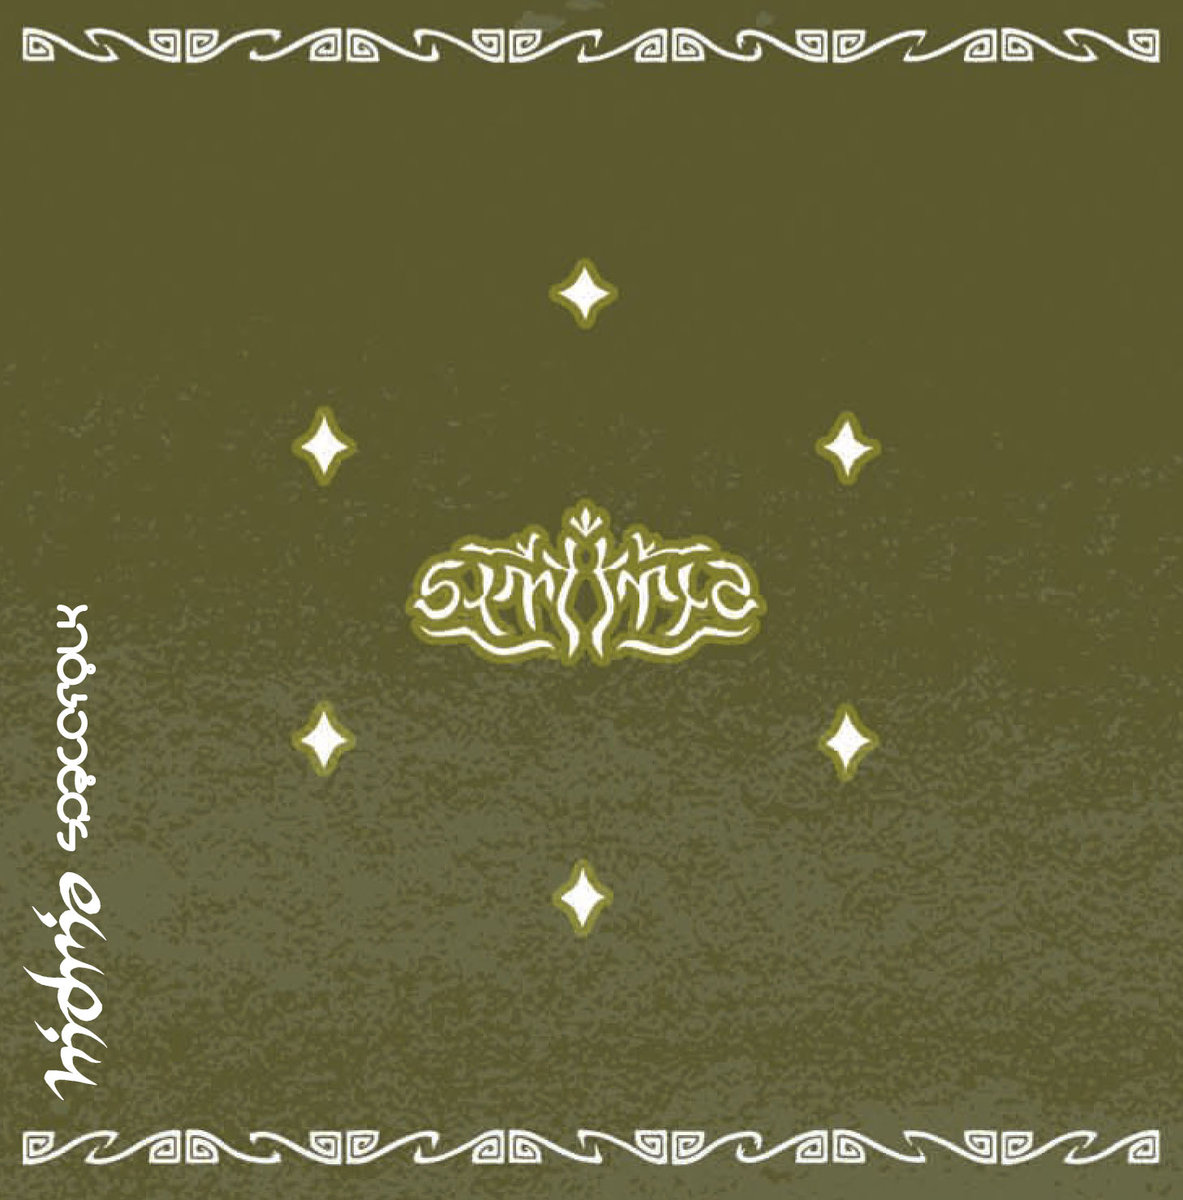 Hidria Spacefolk - Flora/Fauna @ 'Symetria' album (alternative, astrobeat)